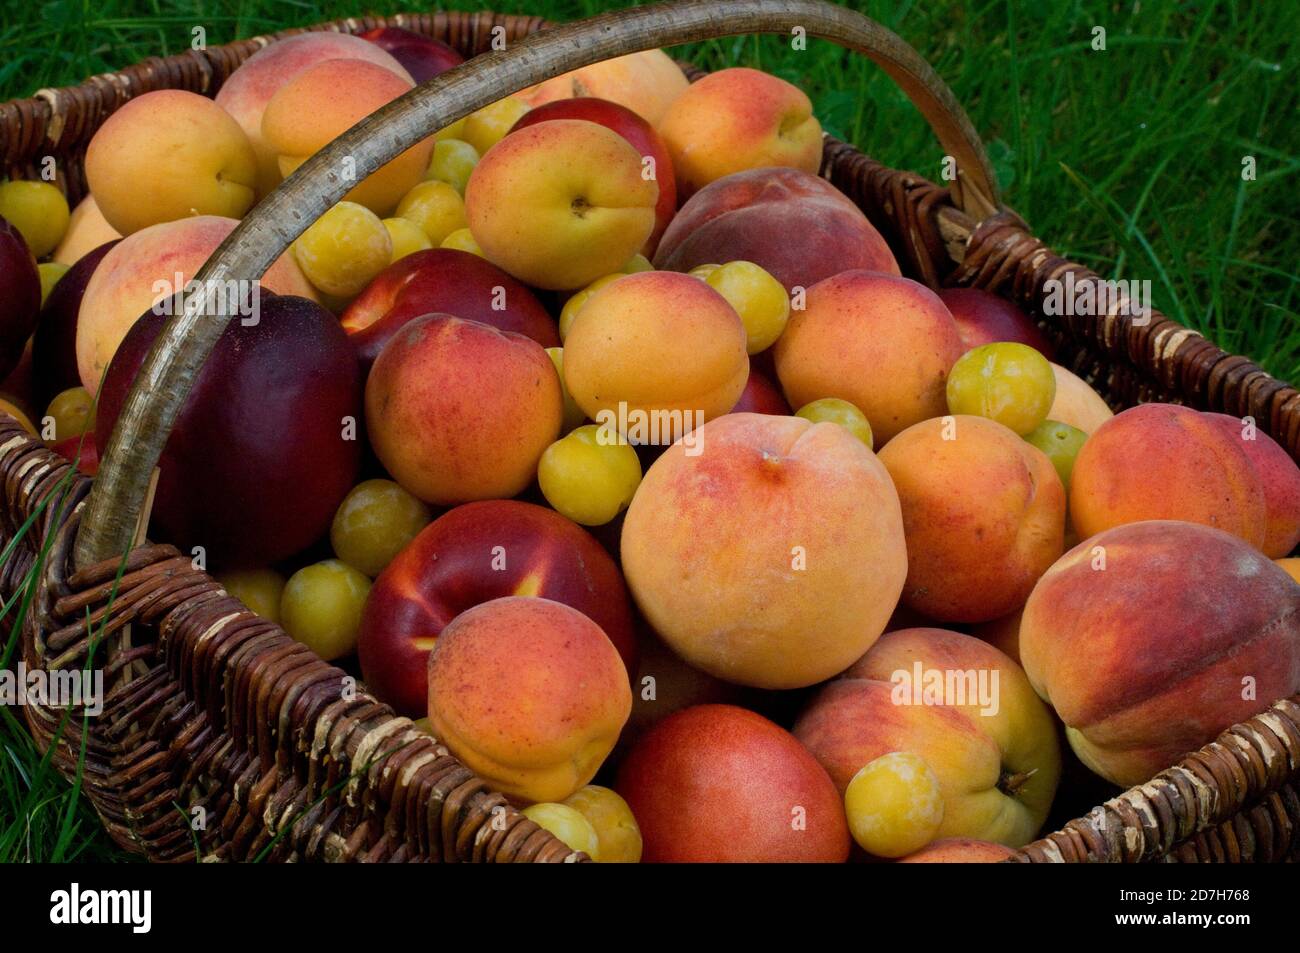 Apricot (Prunus armeniaca), Nectarine (Prunus persica), Peach (Prunus persica), Plum 'Mirabelle de Nancy' (Prunus domestica) in a basket Stock Photo